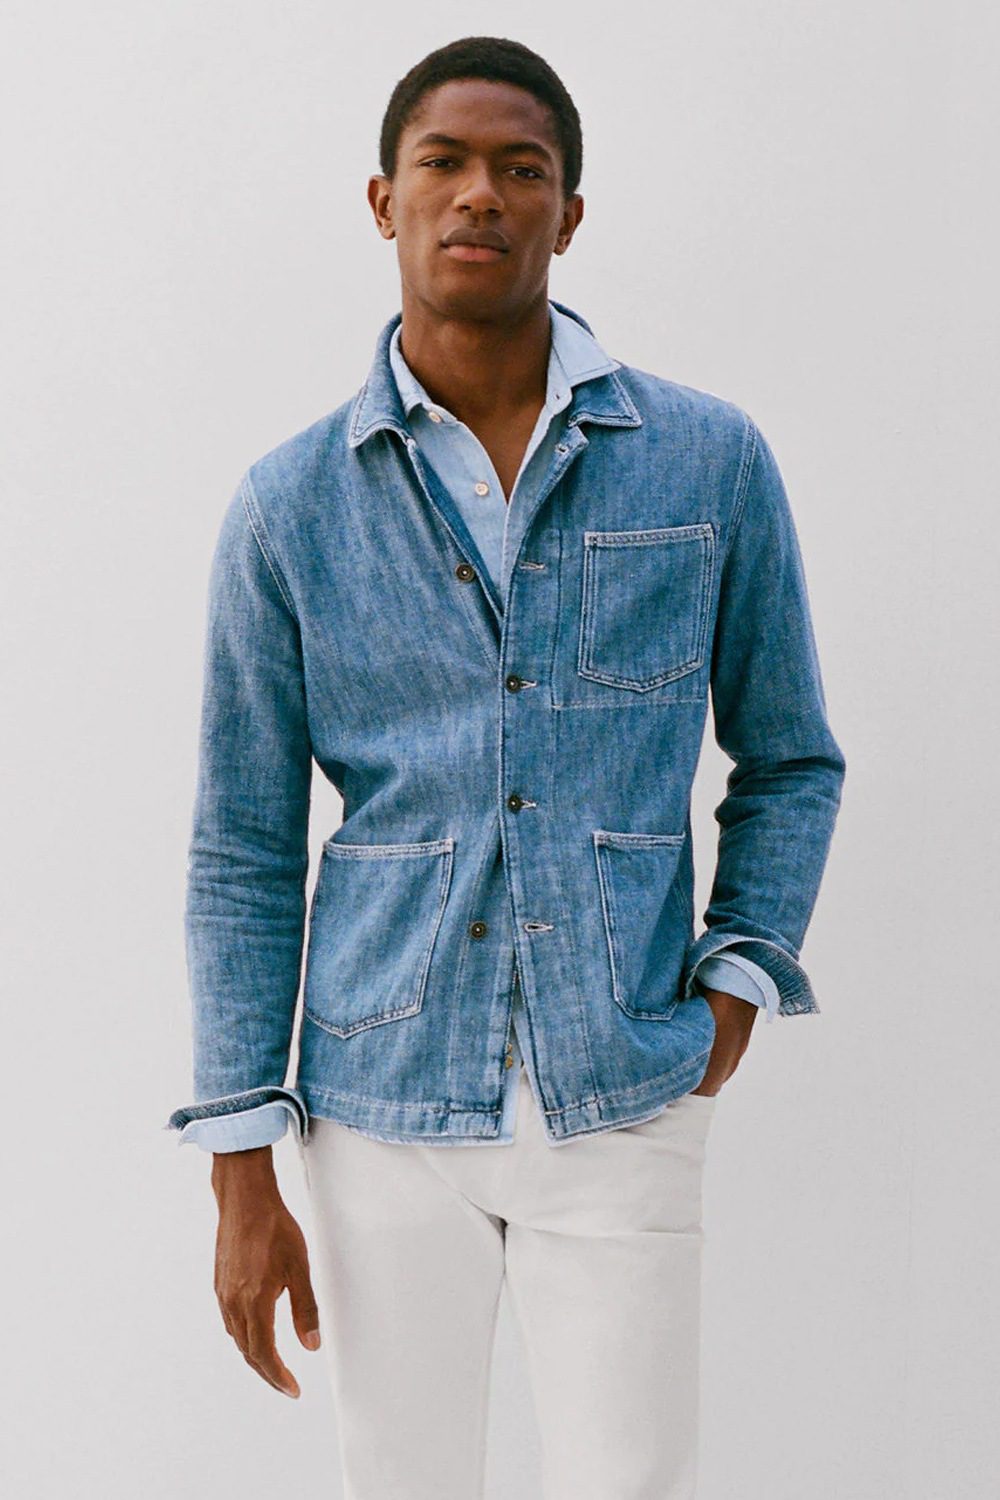 Villig våben sendt 11 Ways To Wear A Denim Jean Jacket That Will Always Look Cool